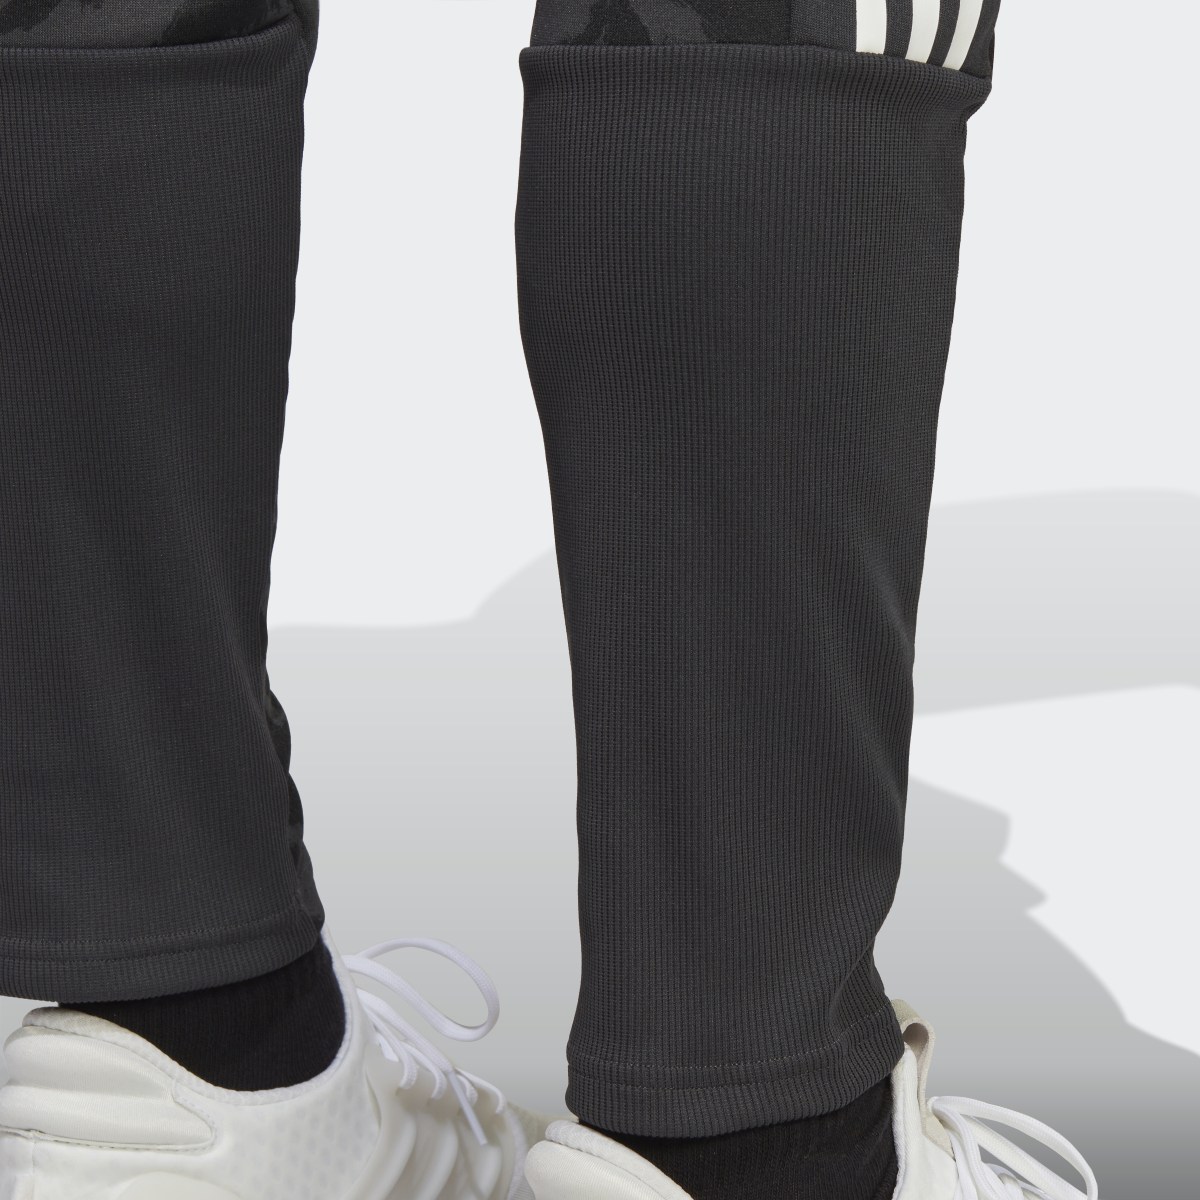 Adidas Tiro Suit-Up Lifestyle Trainingshose. 7